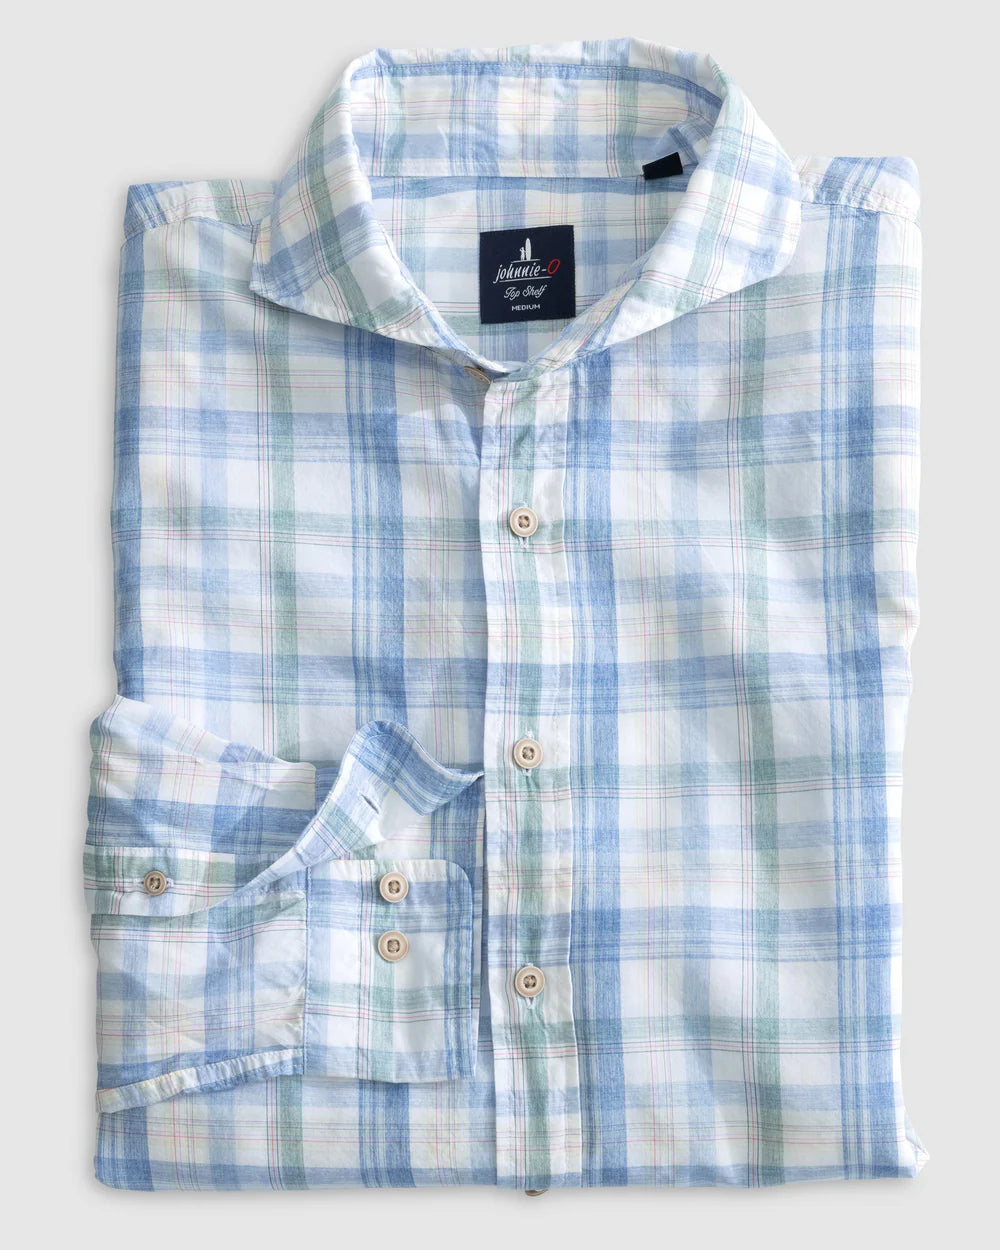 Johnnie-O Liden Top Shelf Button Up Shirt